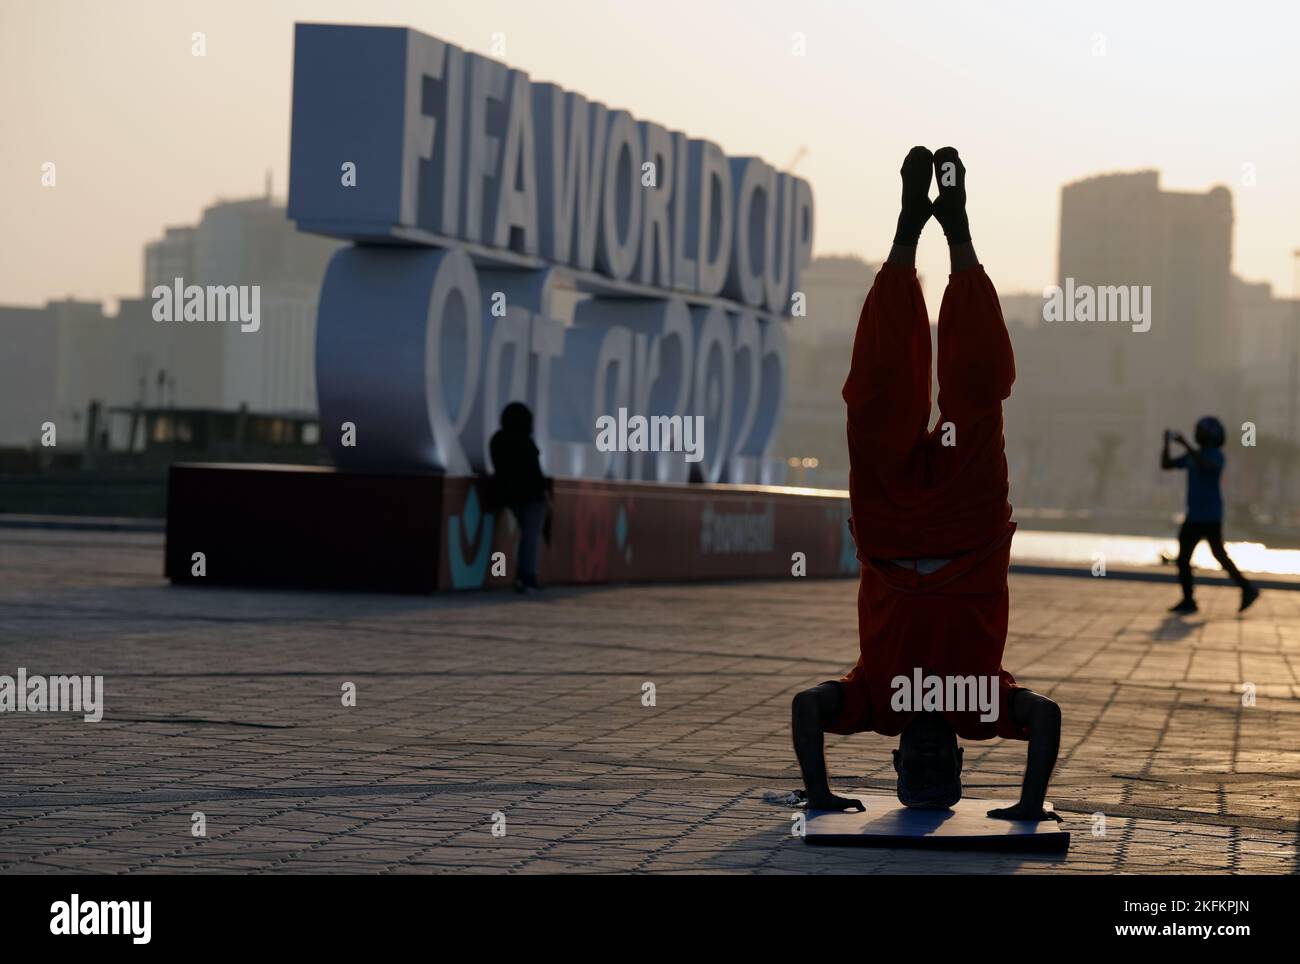 Jhapat Bahadur Linear führt Yoga bei Sonnenaufgang in Doha vor der FIFA Fußball-Weltmeisterschaft 2022 in Katar durch. Bilddatum: Samstag, 19. November 2022. Stockfoto